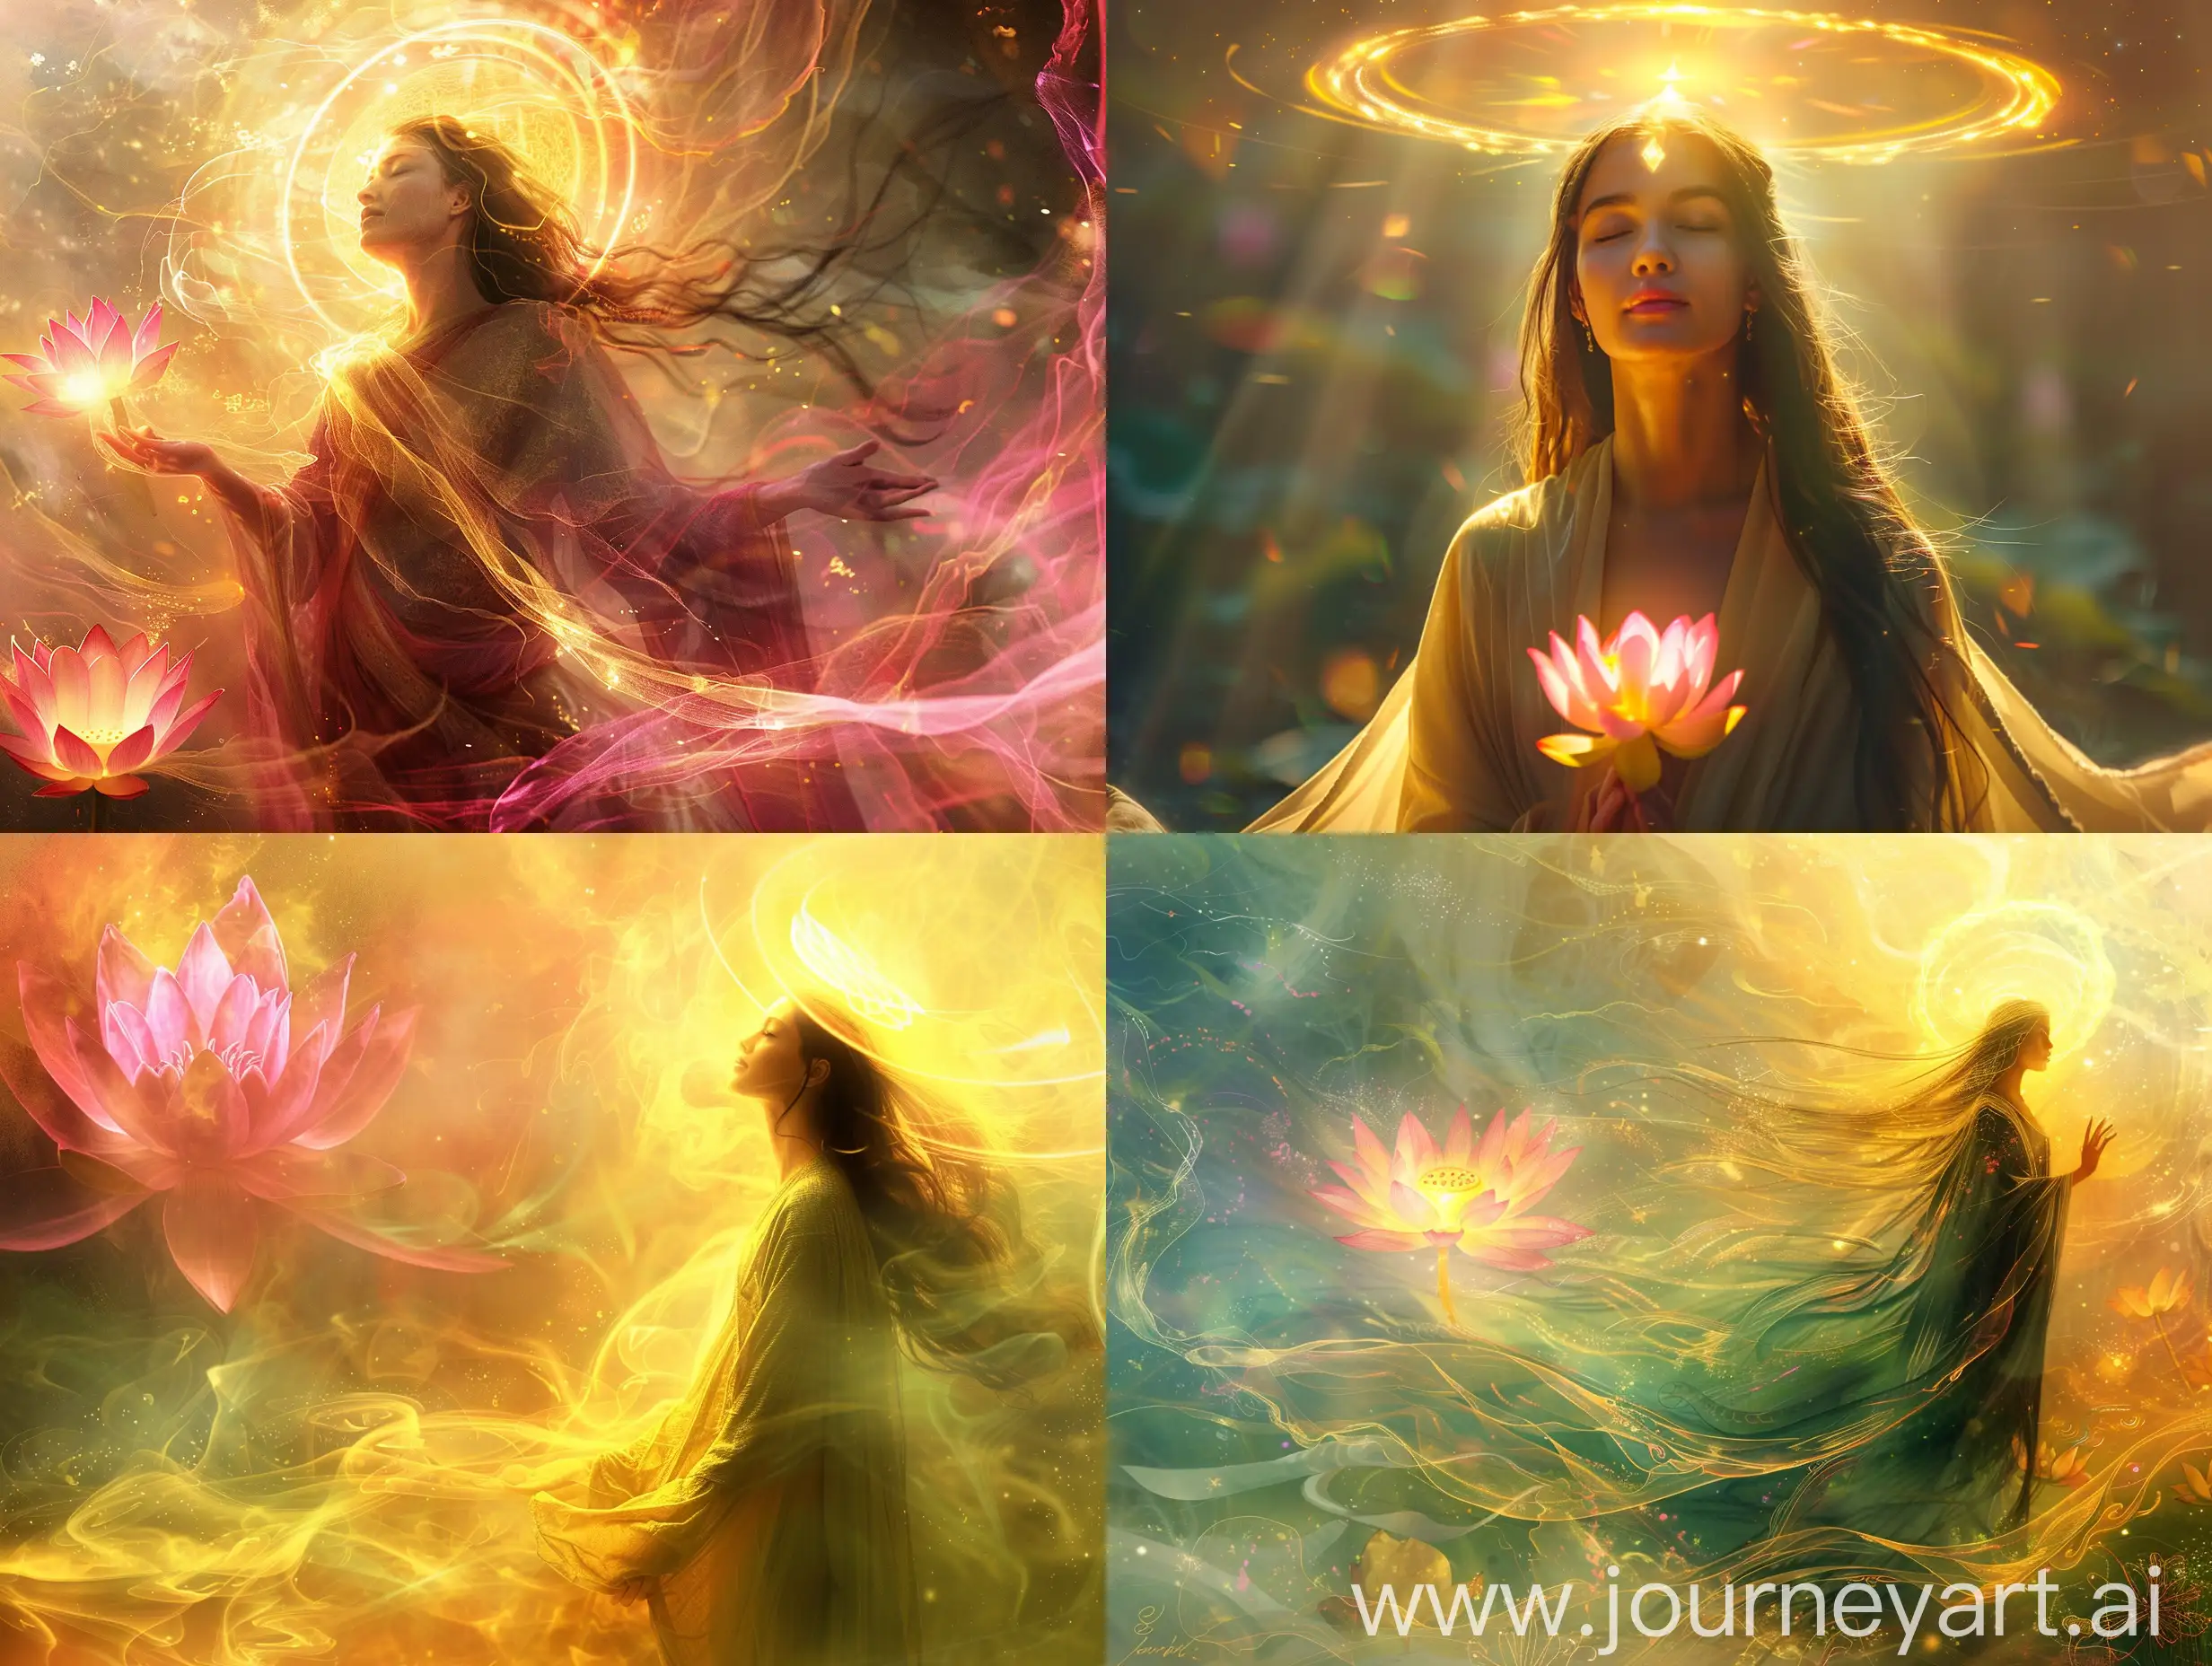 Serene-Woman-in-Flowing-Robes-Amidst-Spiritual-Awakening